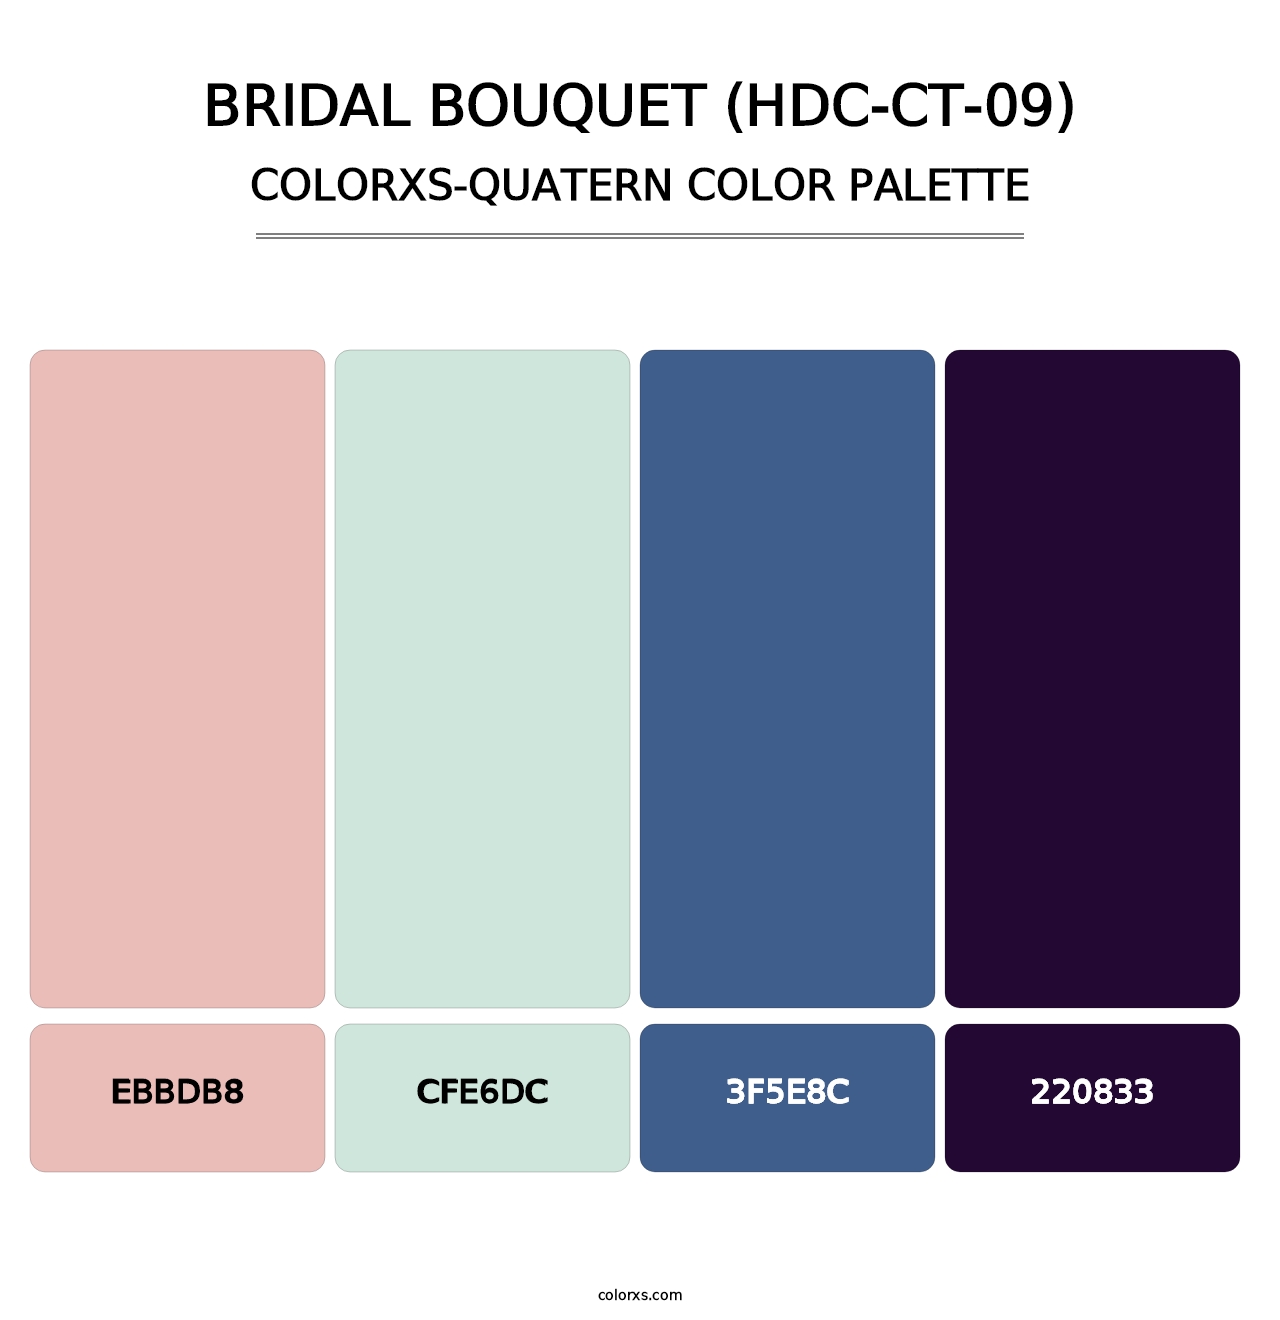 Bridal Bouquet (HDC-CT-09) - Colorxs Quatern Palette